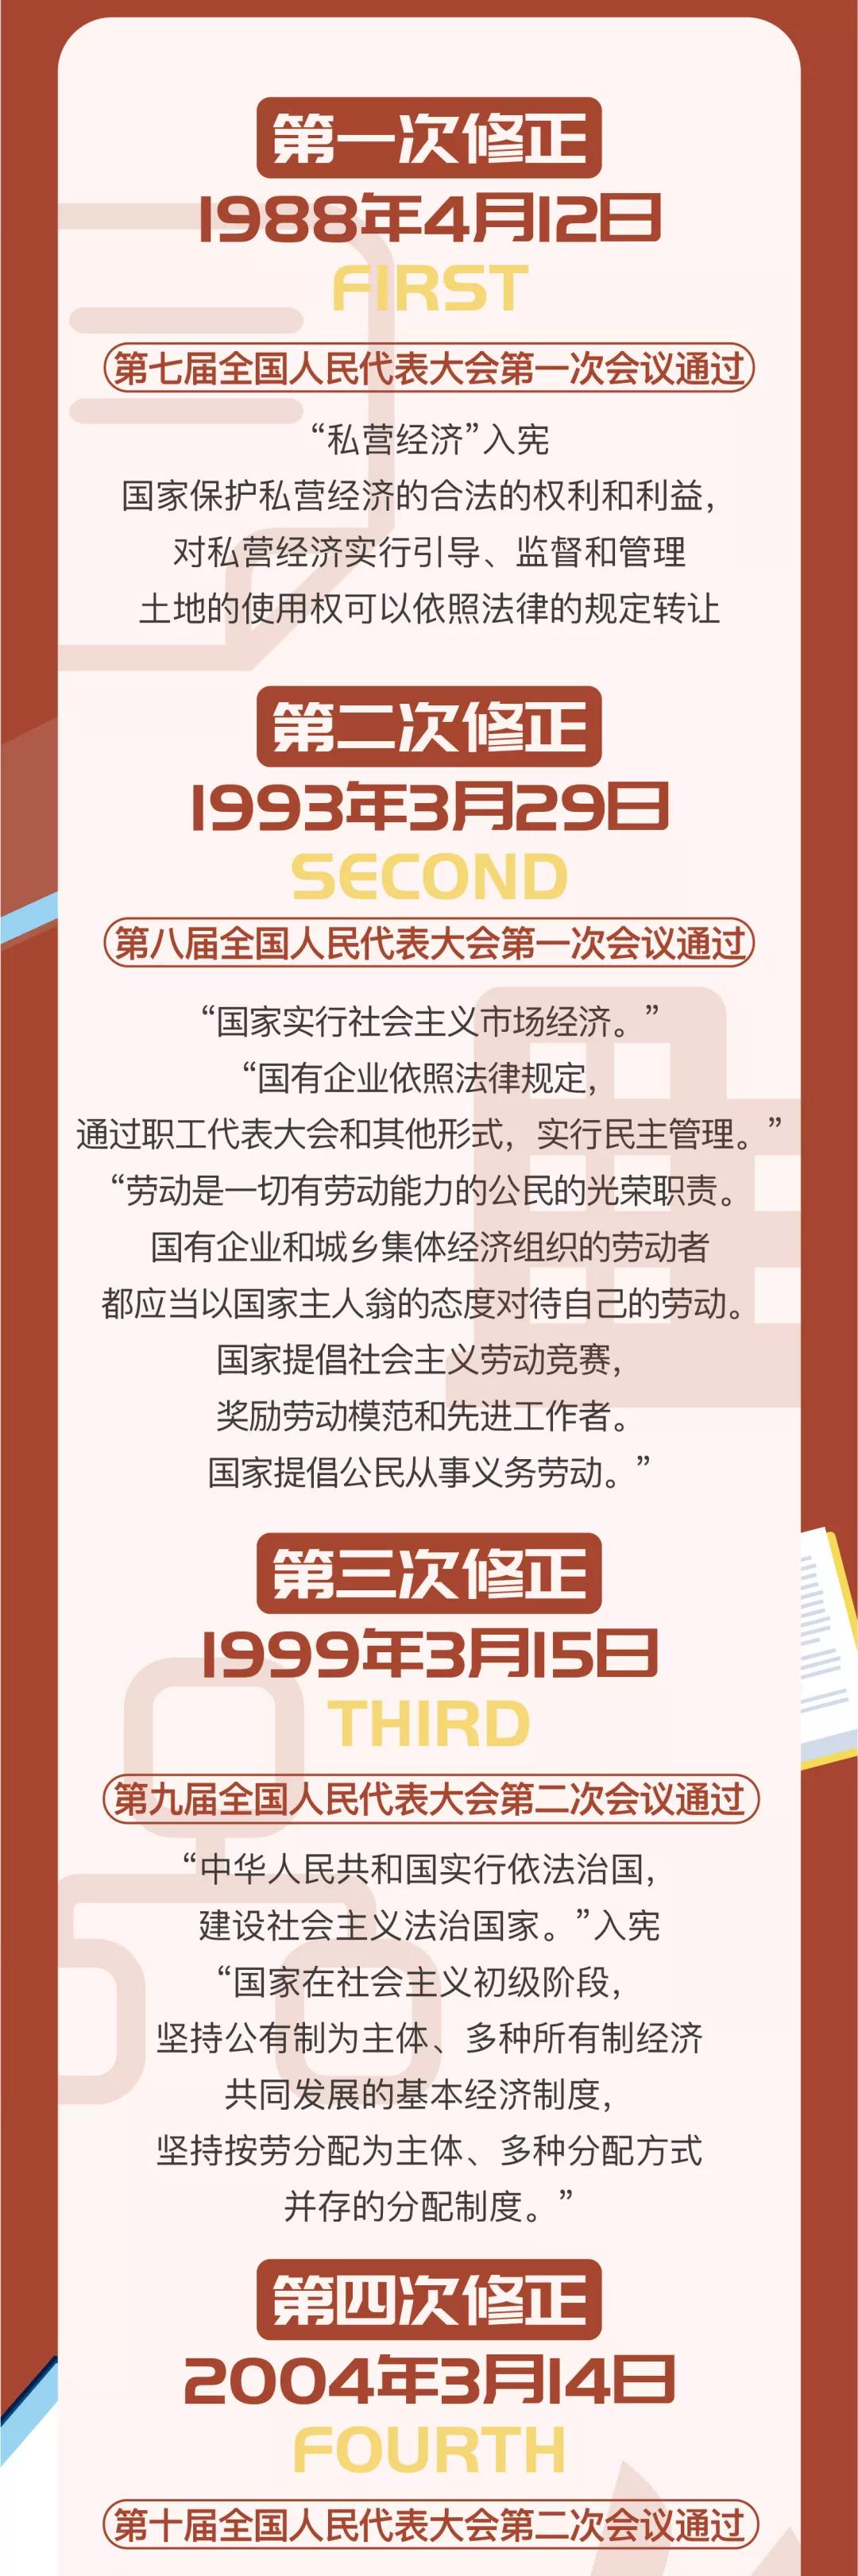 宪法宣传周丨图解中华人民共和国宪法的历史沿革